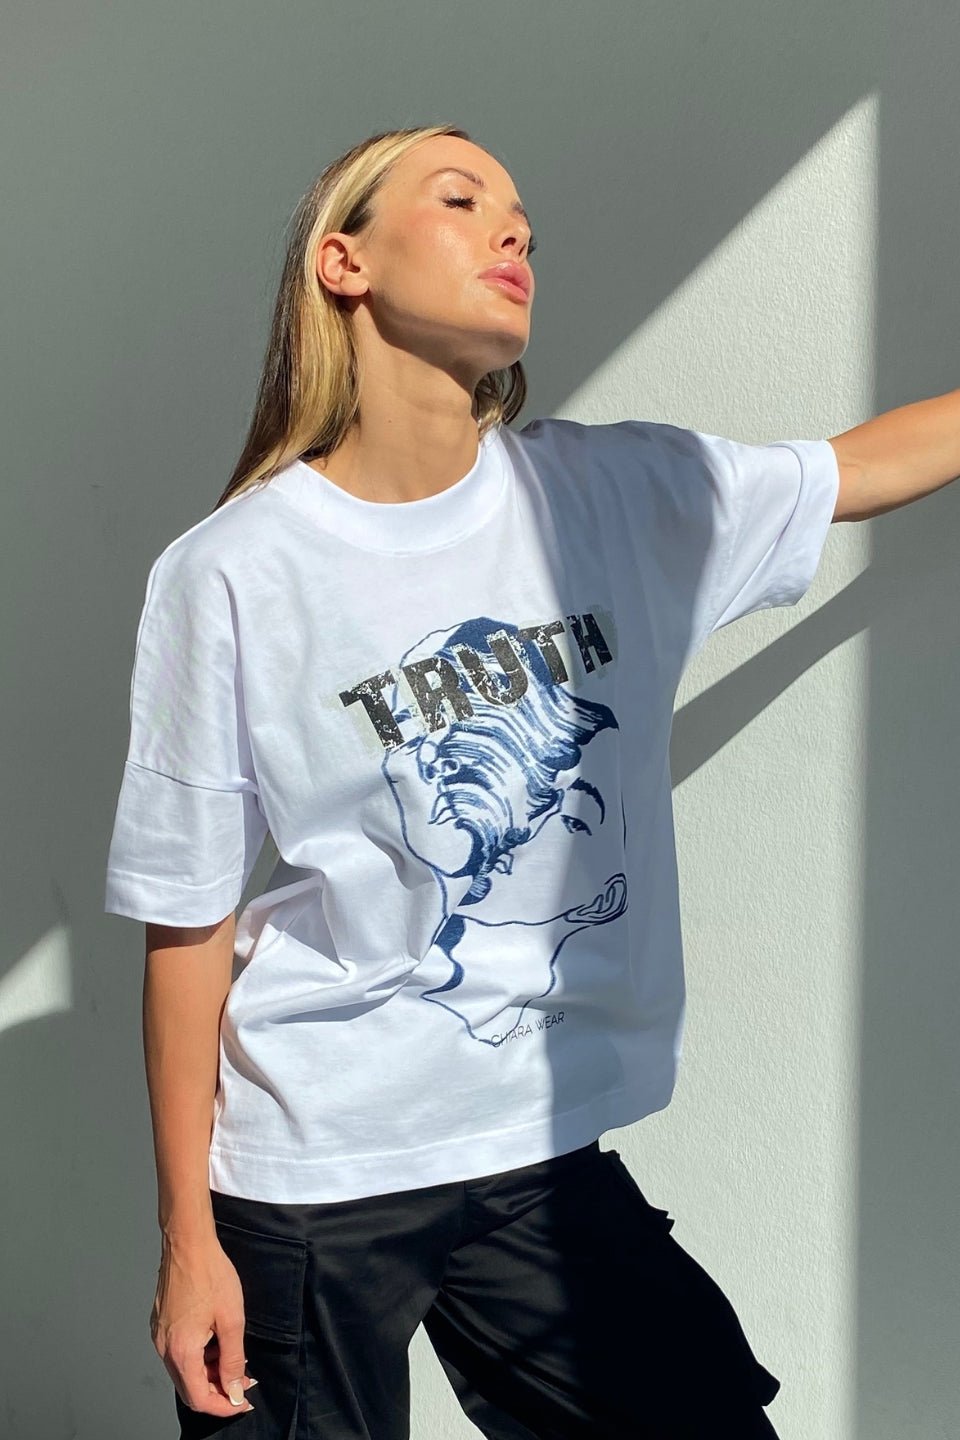 T-shirt damski oversize TRUTH - biały - Chiara Wear